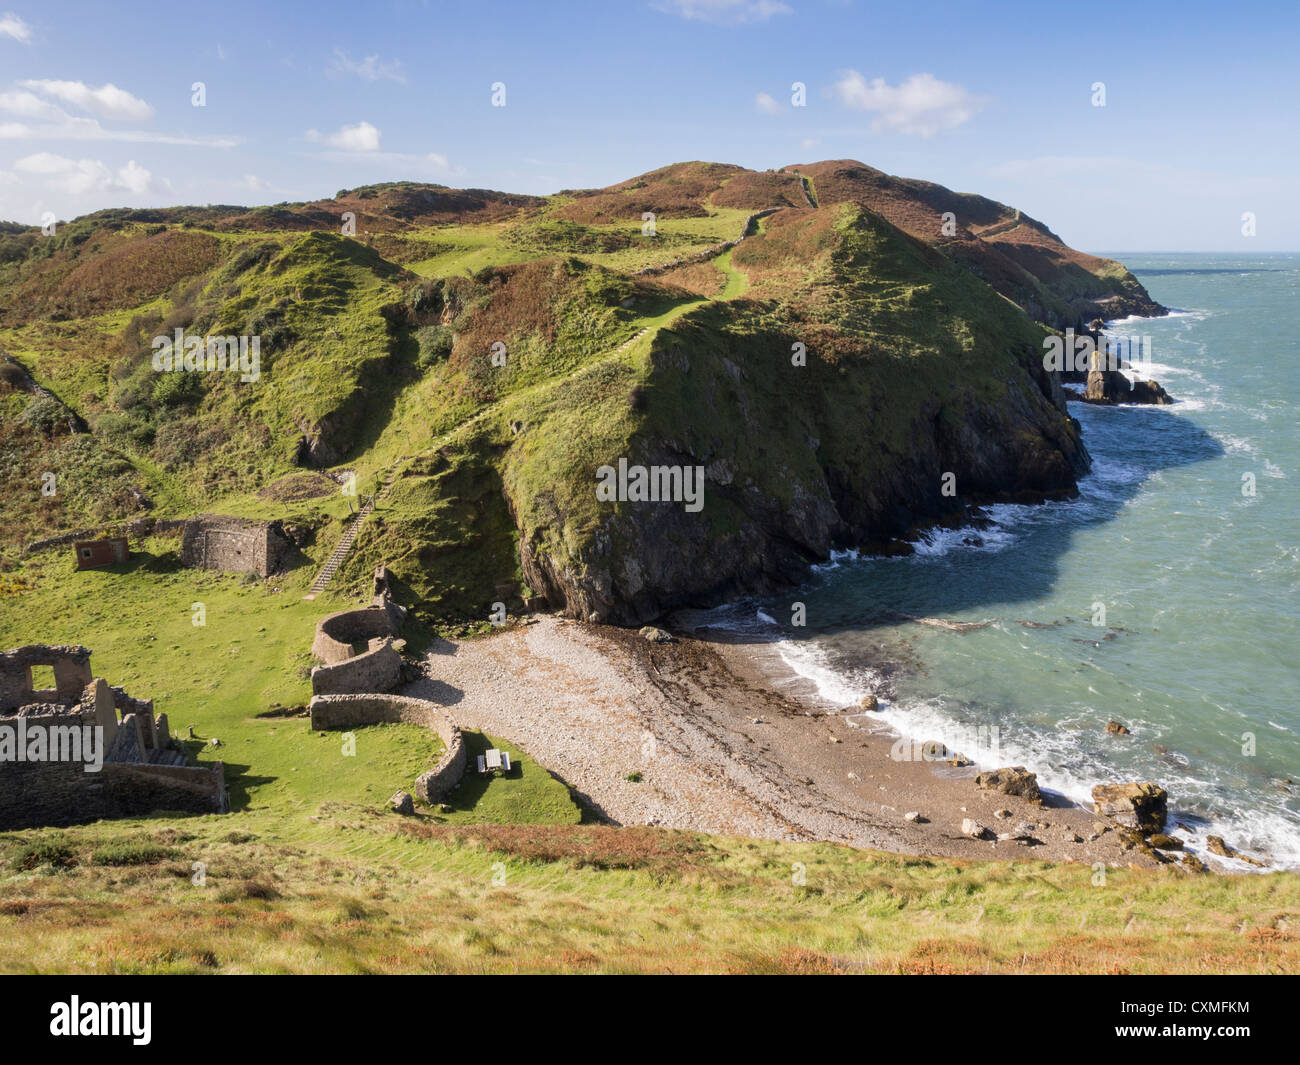 Vue sur le sentier côtier de l'île d'Anglesey sentier côtier de la côte du pays de Galles Et le littoral sauvage de l'AONB à Porth Llanlleriana Bay Cemaes Anglesey pays de Galles Royaume-Uni Grande-Bretagne Banque D'Images